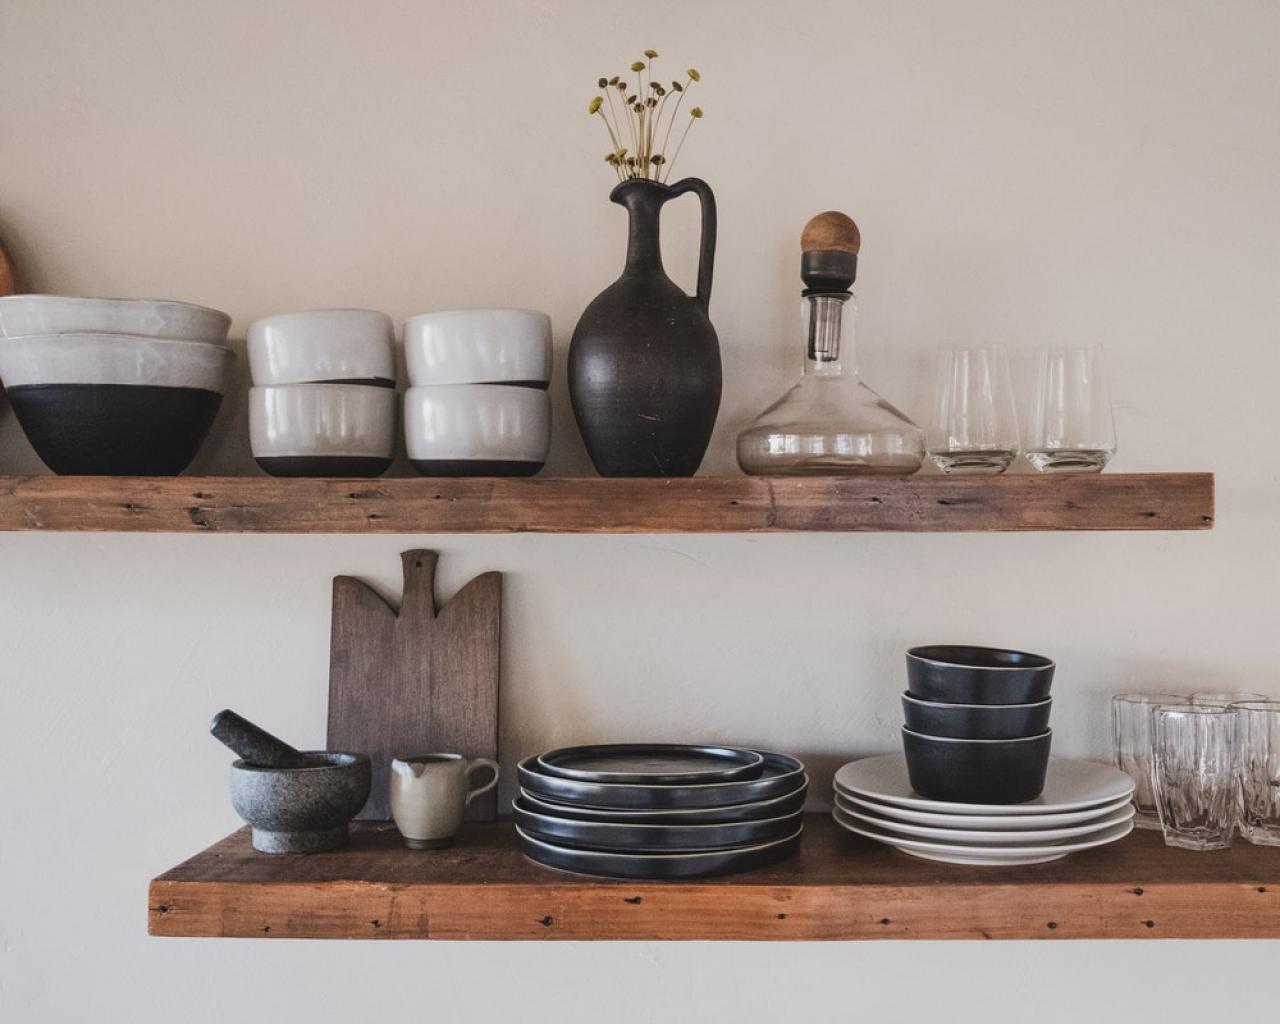 Kako da uredite vašu malu kuhinju i dobijete više prostora - Korisni savjeti kako da uredite vašu malu kuhinju i dobijete više prostora